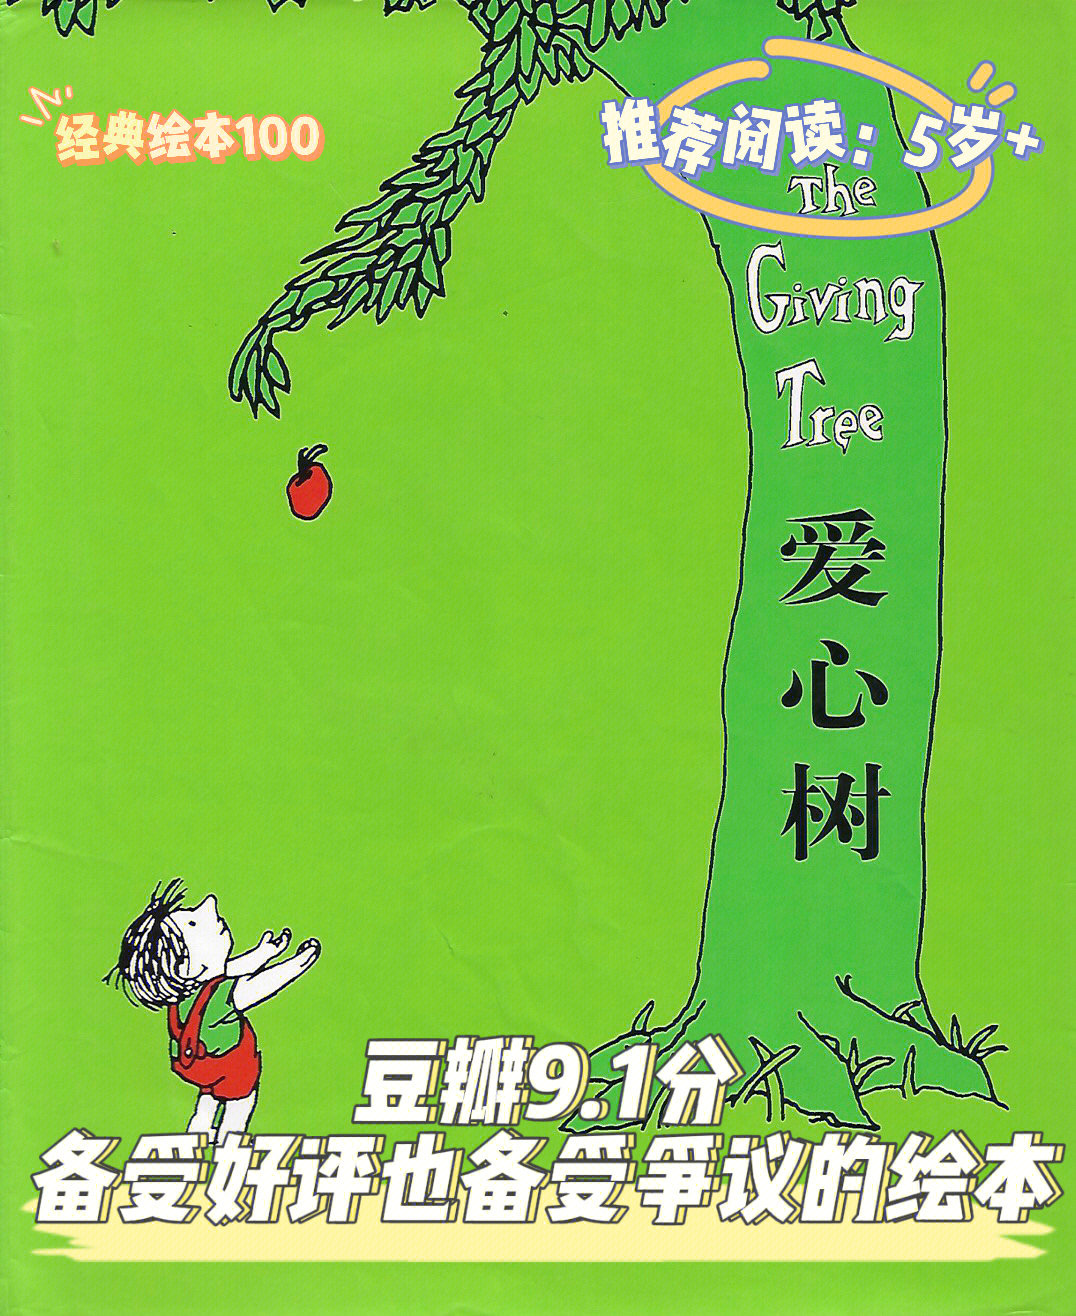 5 90主题:生命,爱98故事内容:一个男孩和一棵苹果树,男孩每天吃树